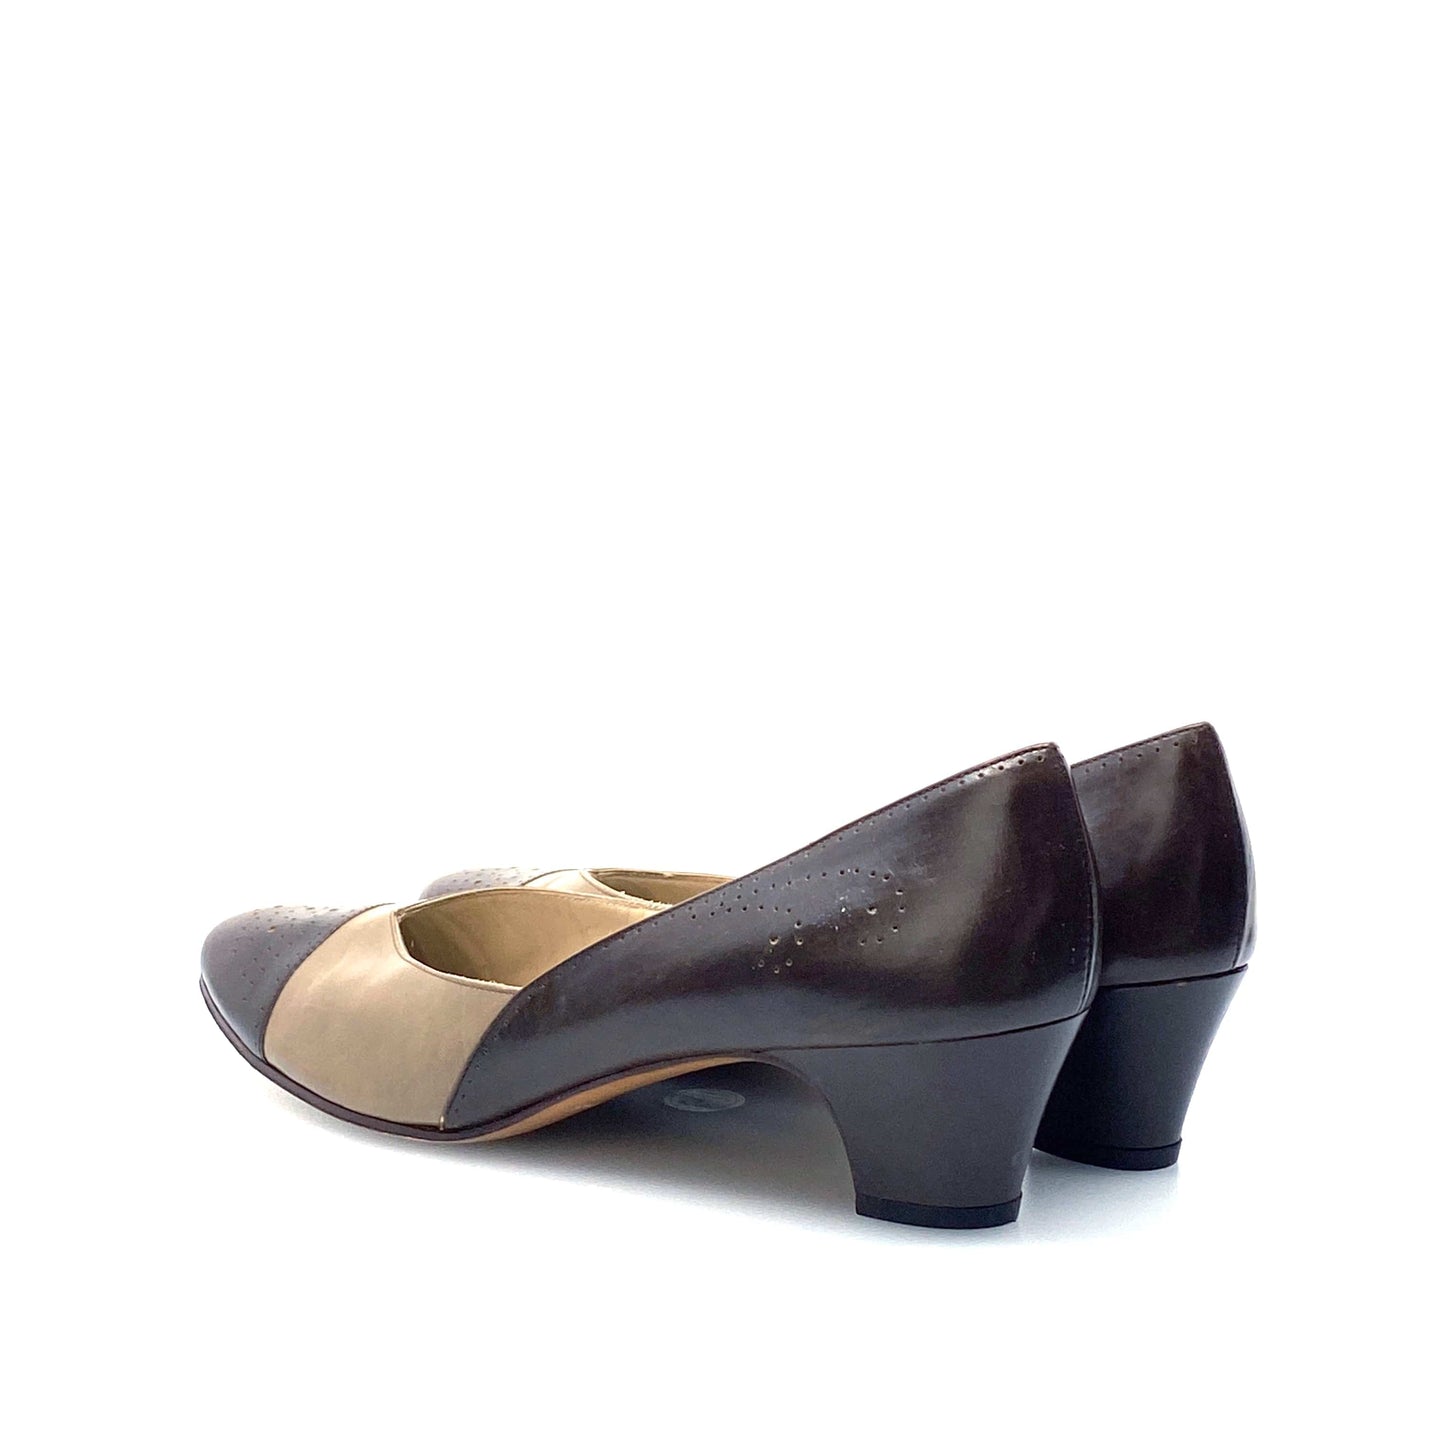 Salvatore Ferragamo Womens Brown Leather Heels Pumps Shoes 8 AAAA